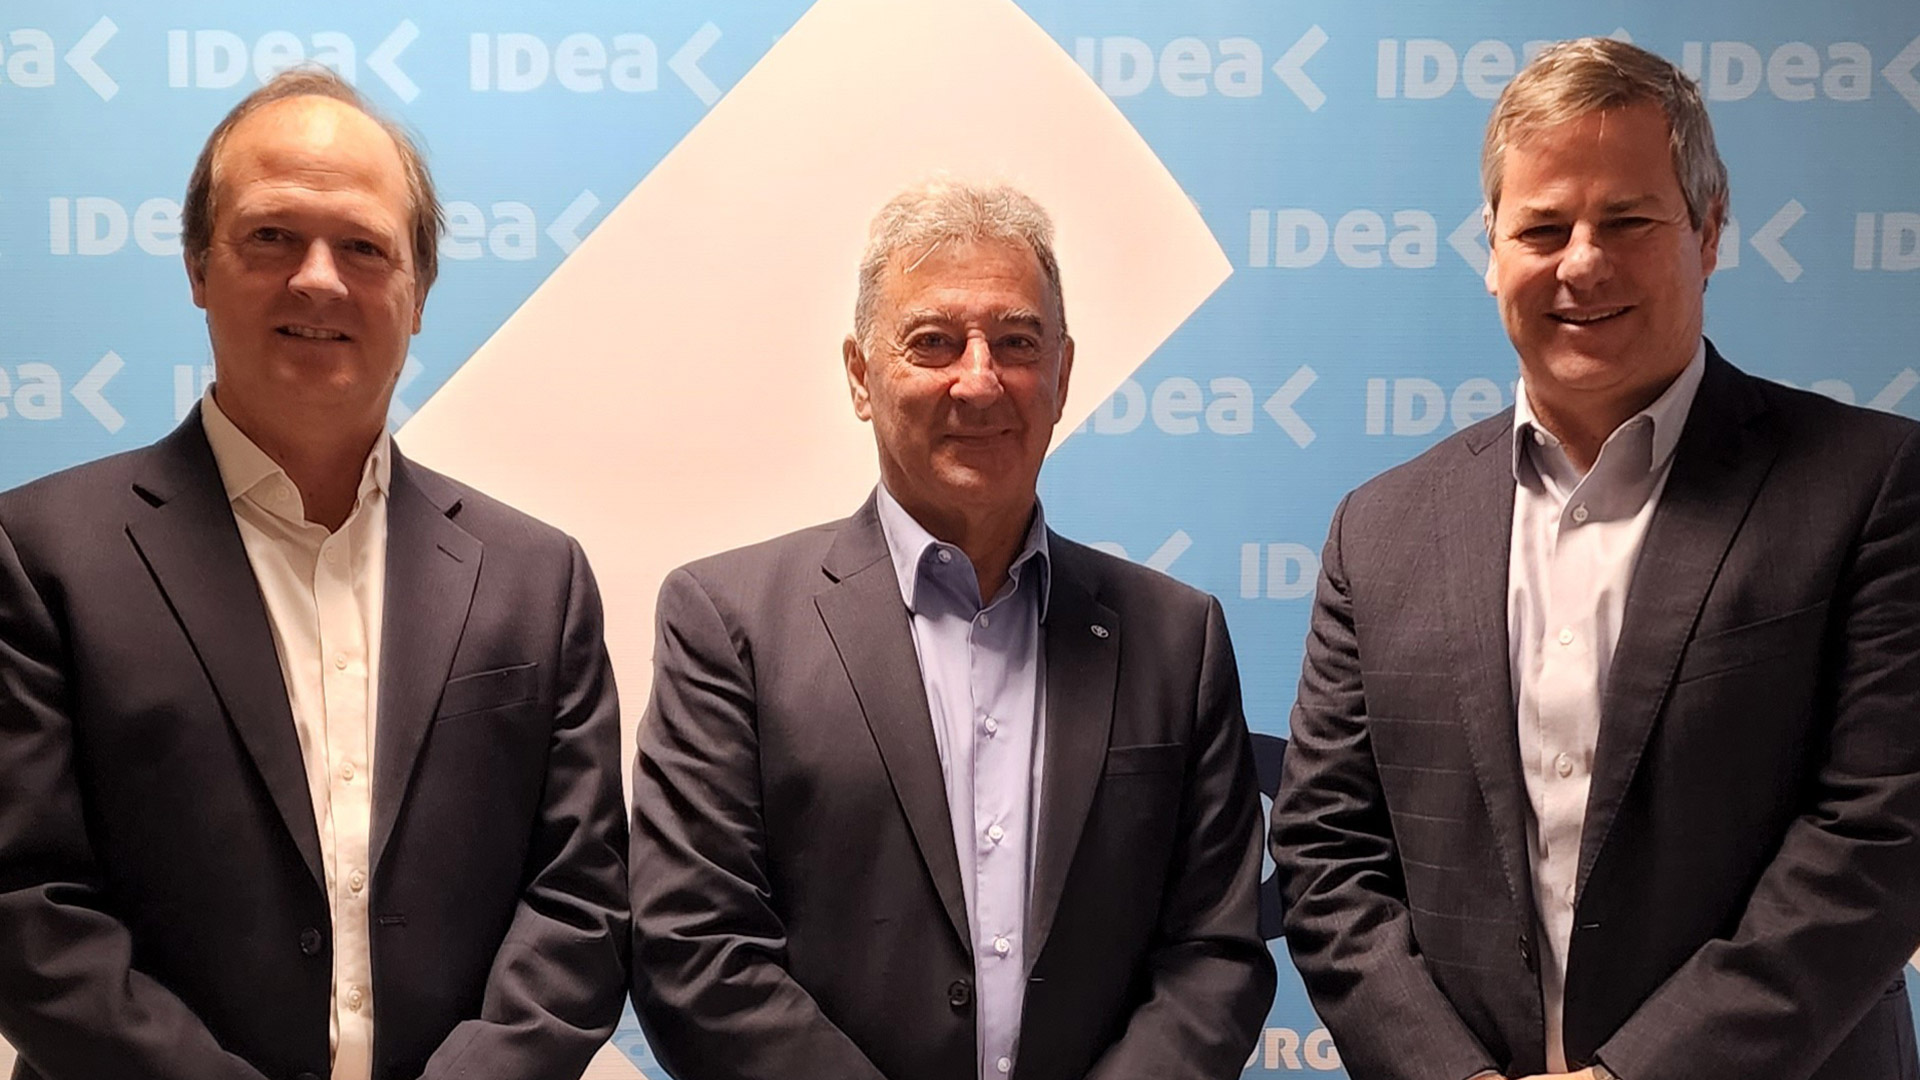 Daniel González, Daniel Herrero y Roberto Murchison, en el encuentro de IDEA del viernes pasado, en el que instaron a "creer y crecer". Pero sin avasallar la división de poderes